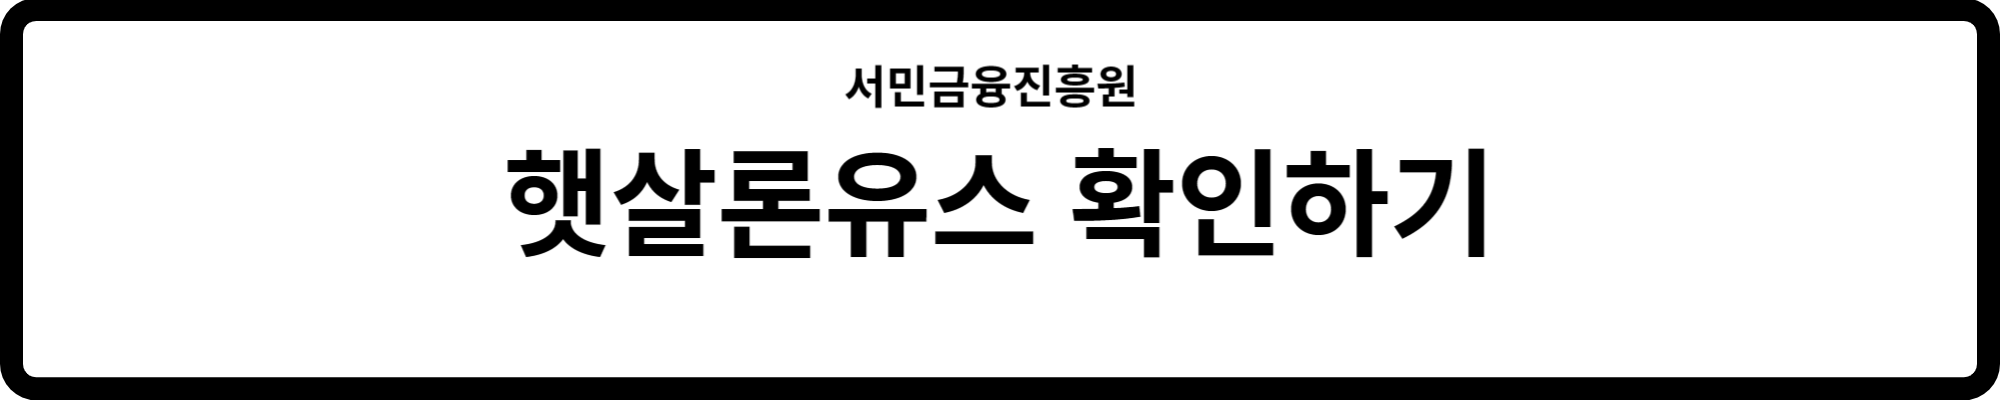 서민금융진흥원에서 햇살론유스에 대해 자세하게 확인해보세요.